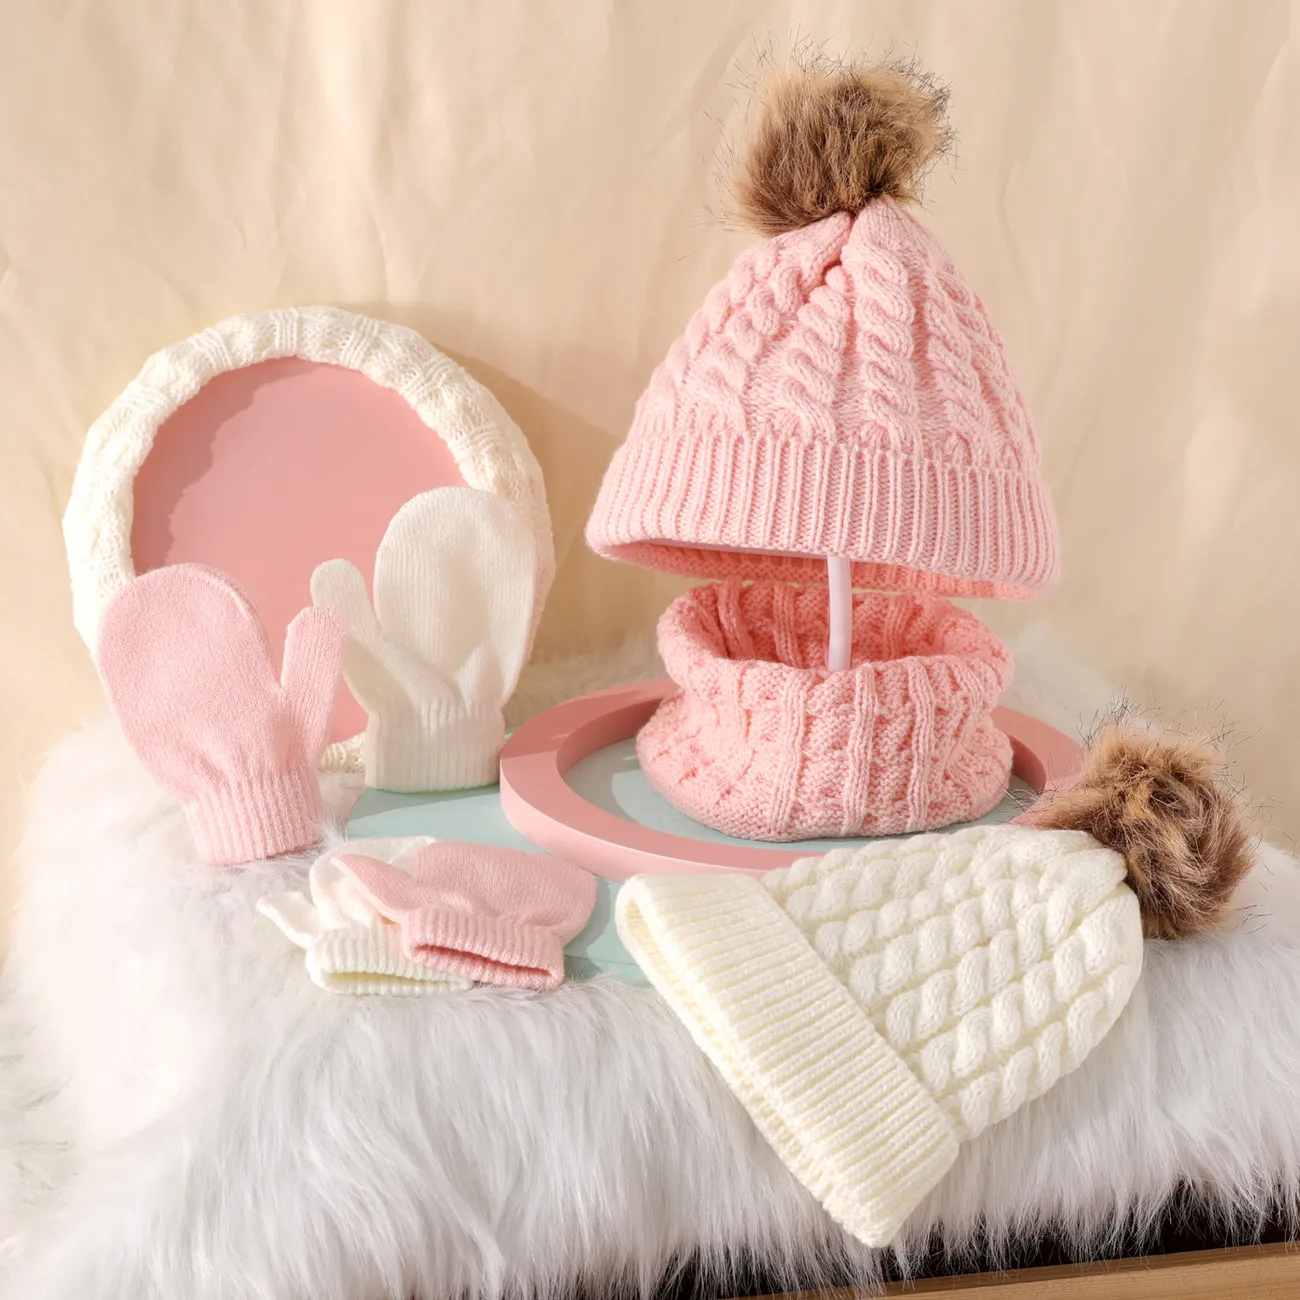 مجموعة من 3 قطع من قبعة صغيرة منسوجة للأطفال / الأطفال الصغار ، وشاح وقفازات ، لون نقي أبيض big image 1